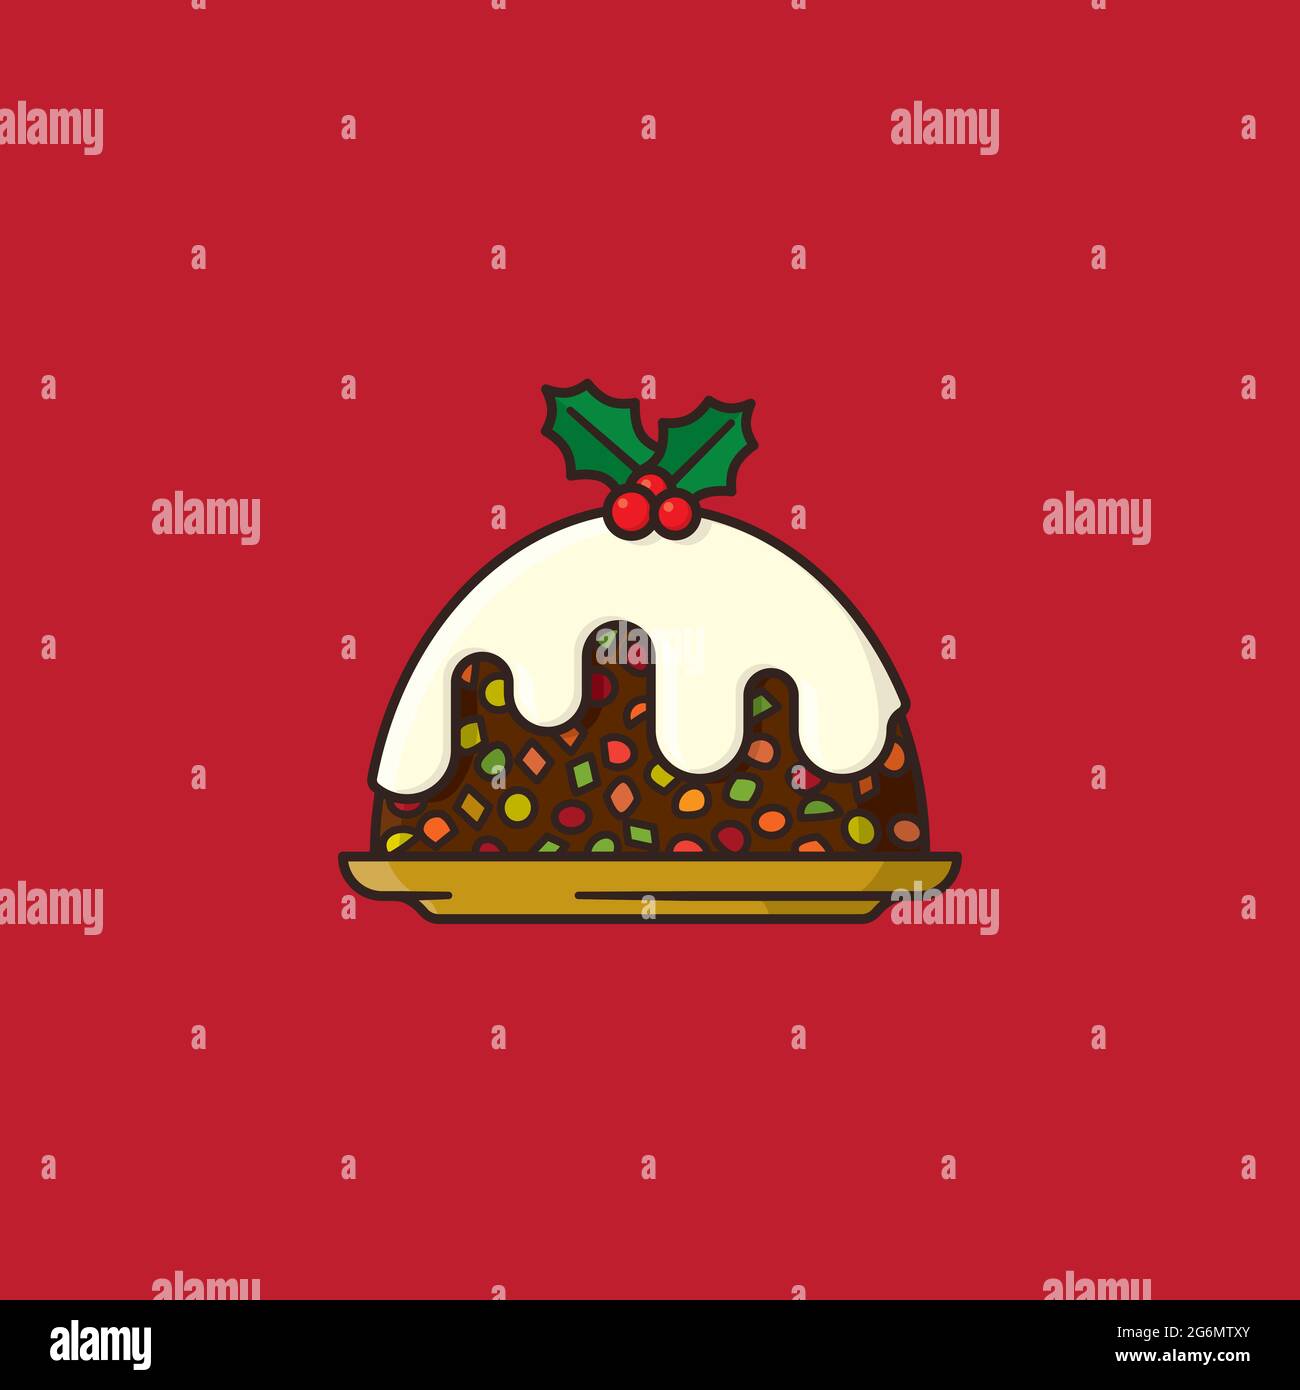 Christmas fruit cake vector illustration for Fruit Cake Day on December 27. Stock Vector